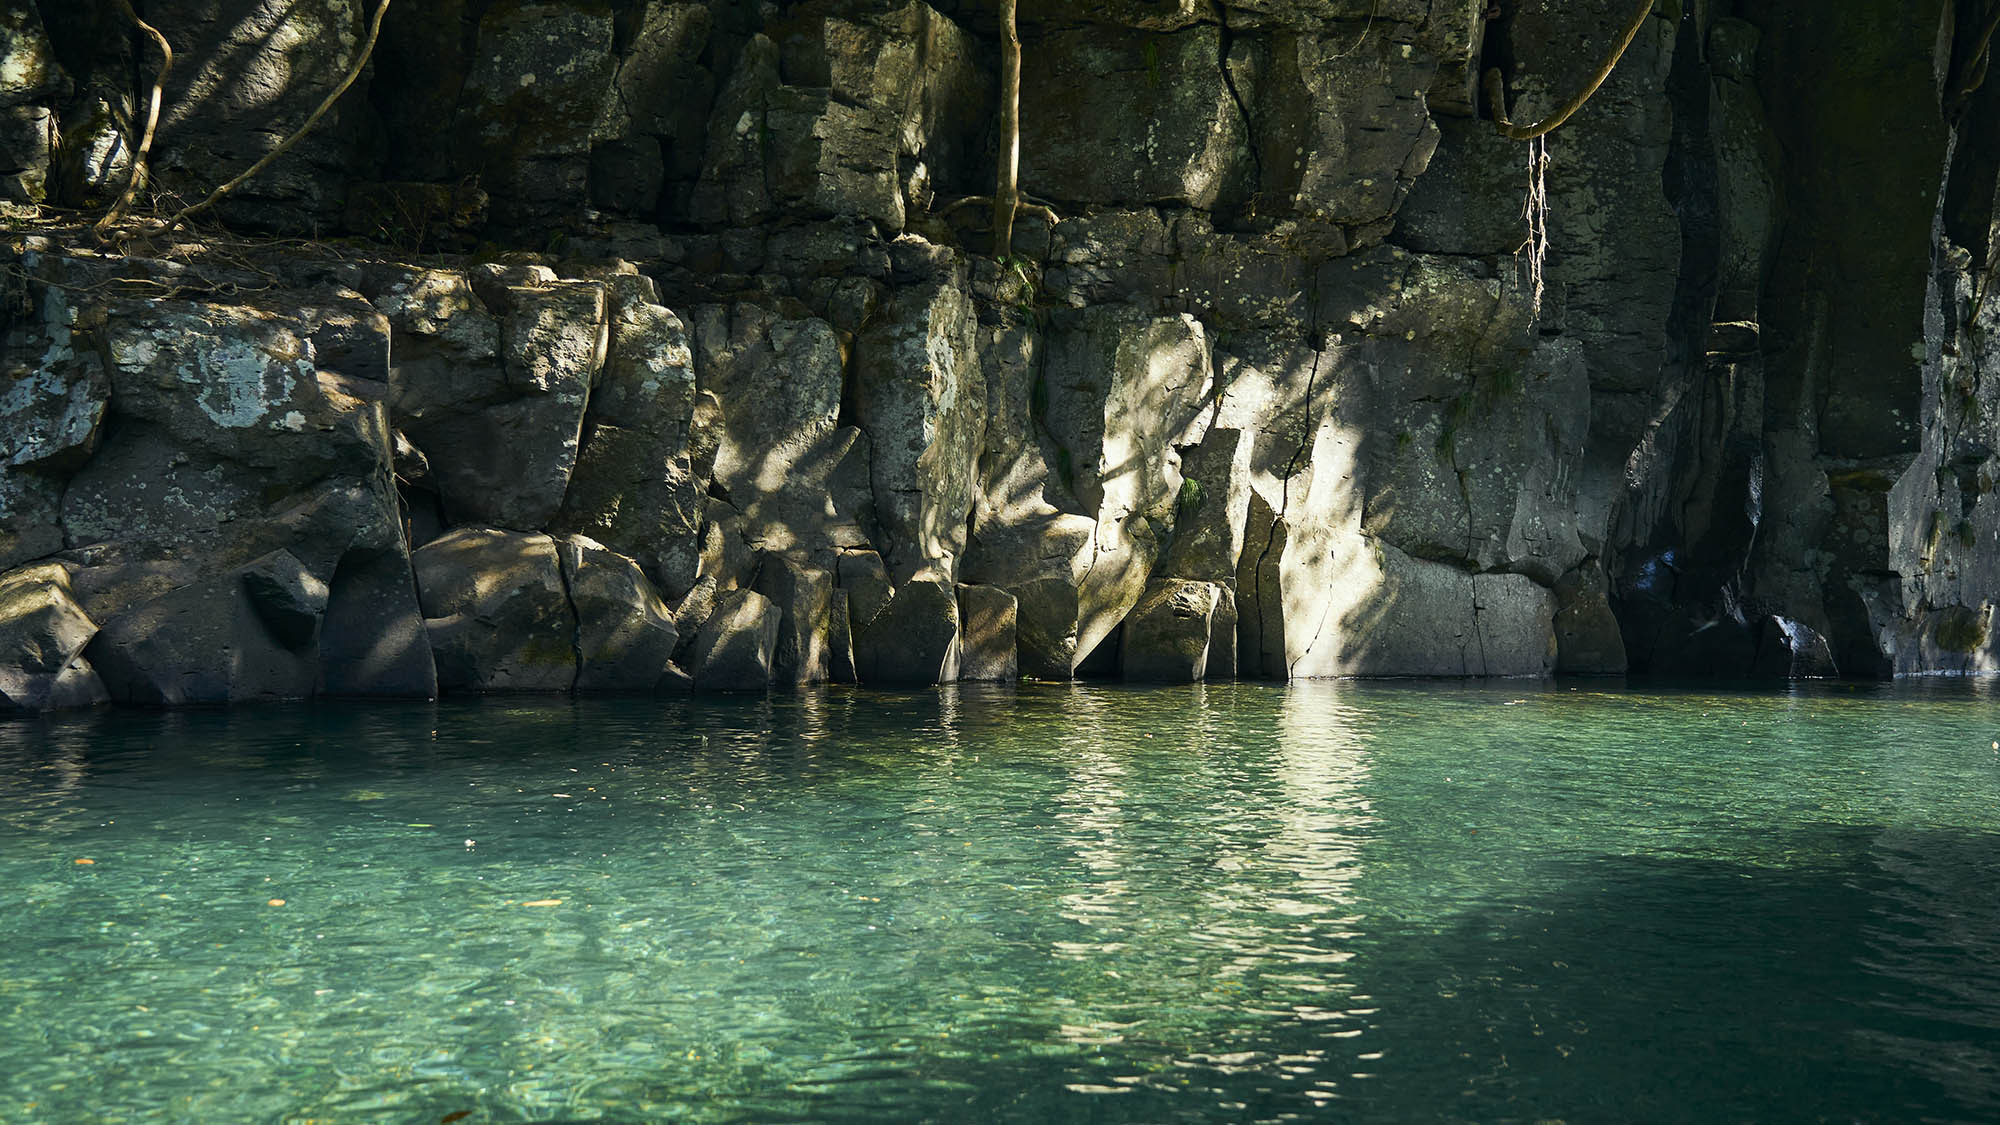 ・【周辺・鍾乳洞】探検隊気分に水中の中を鍾乳洞を歩いて楽しむことができる場所です